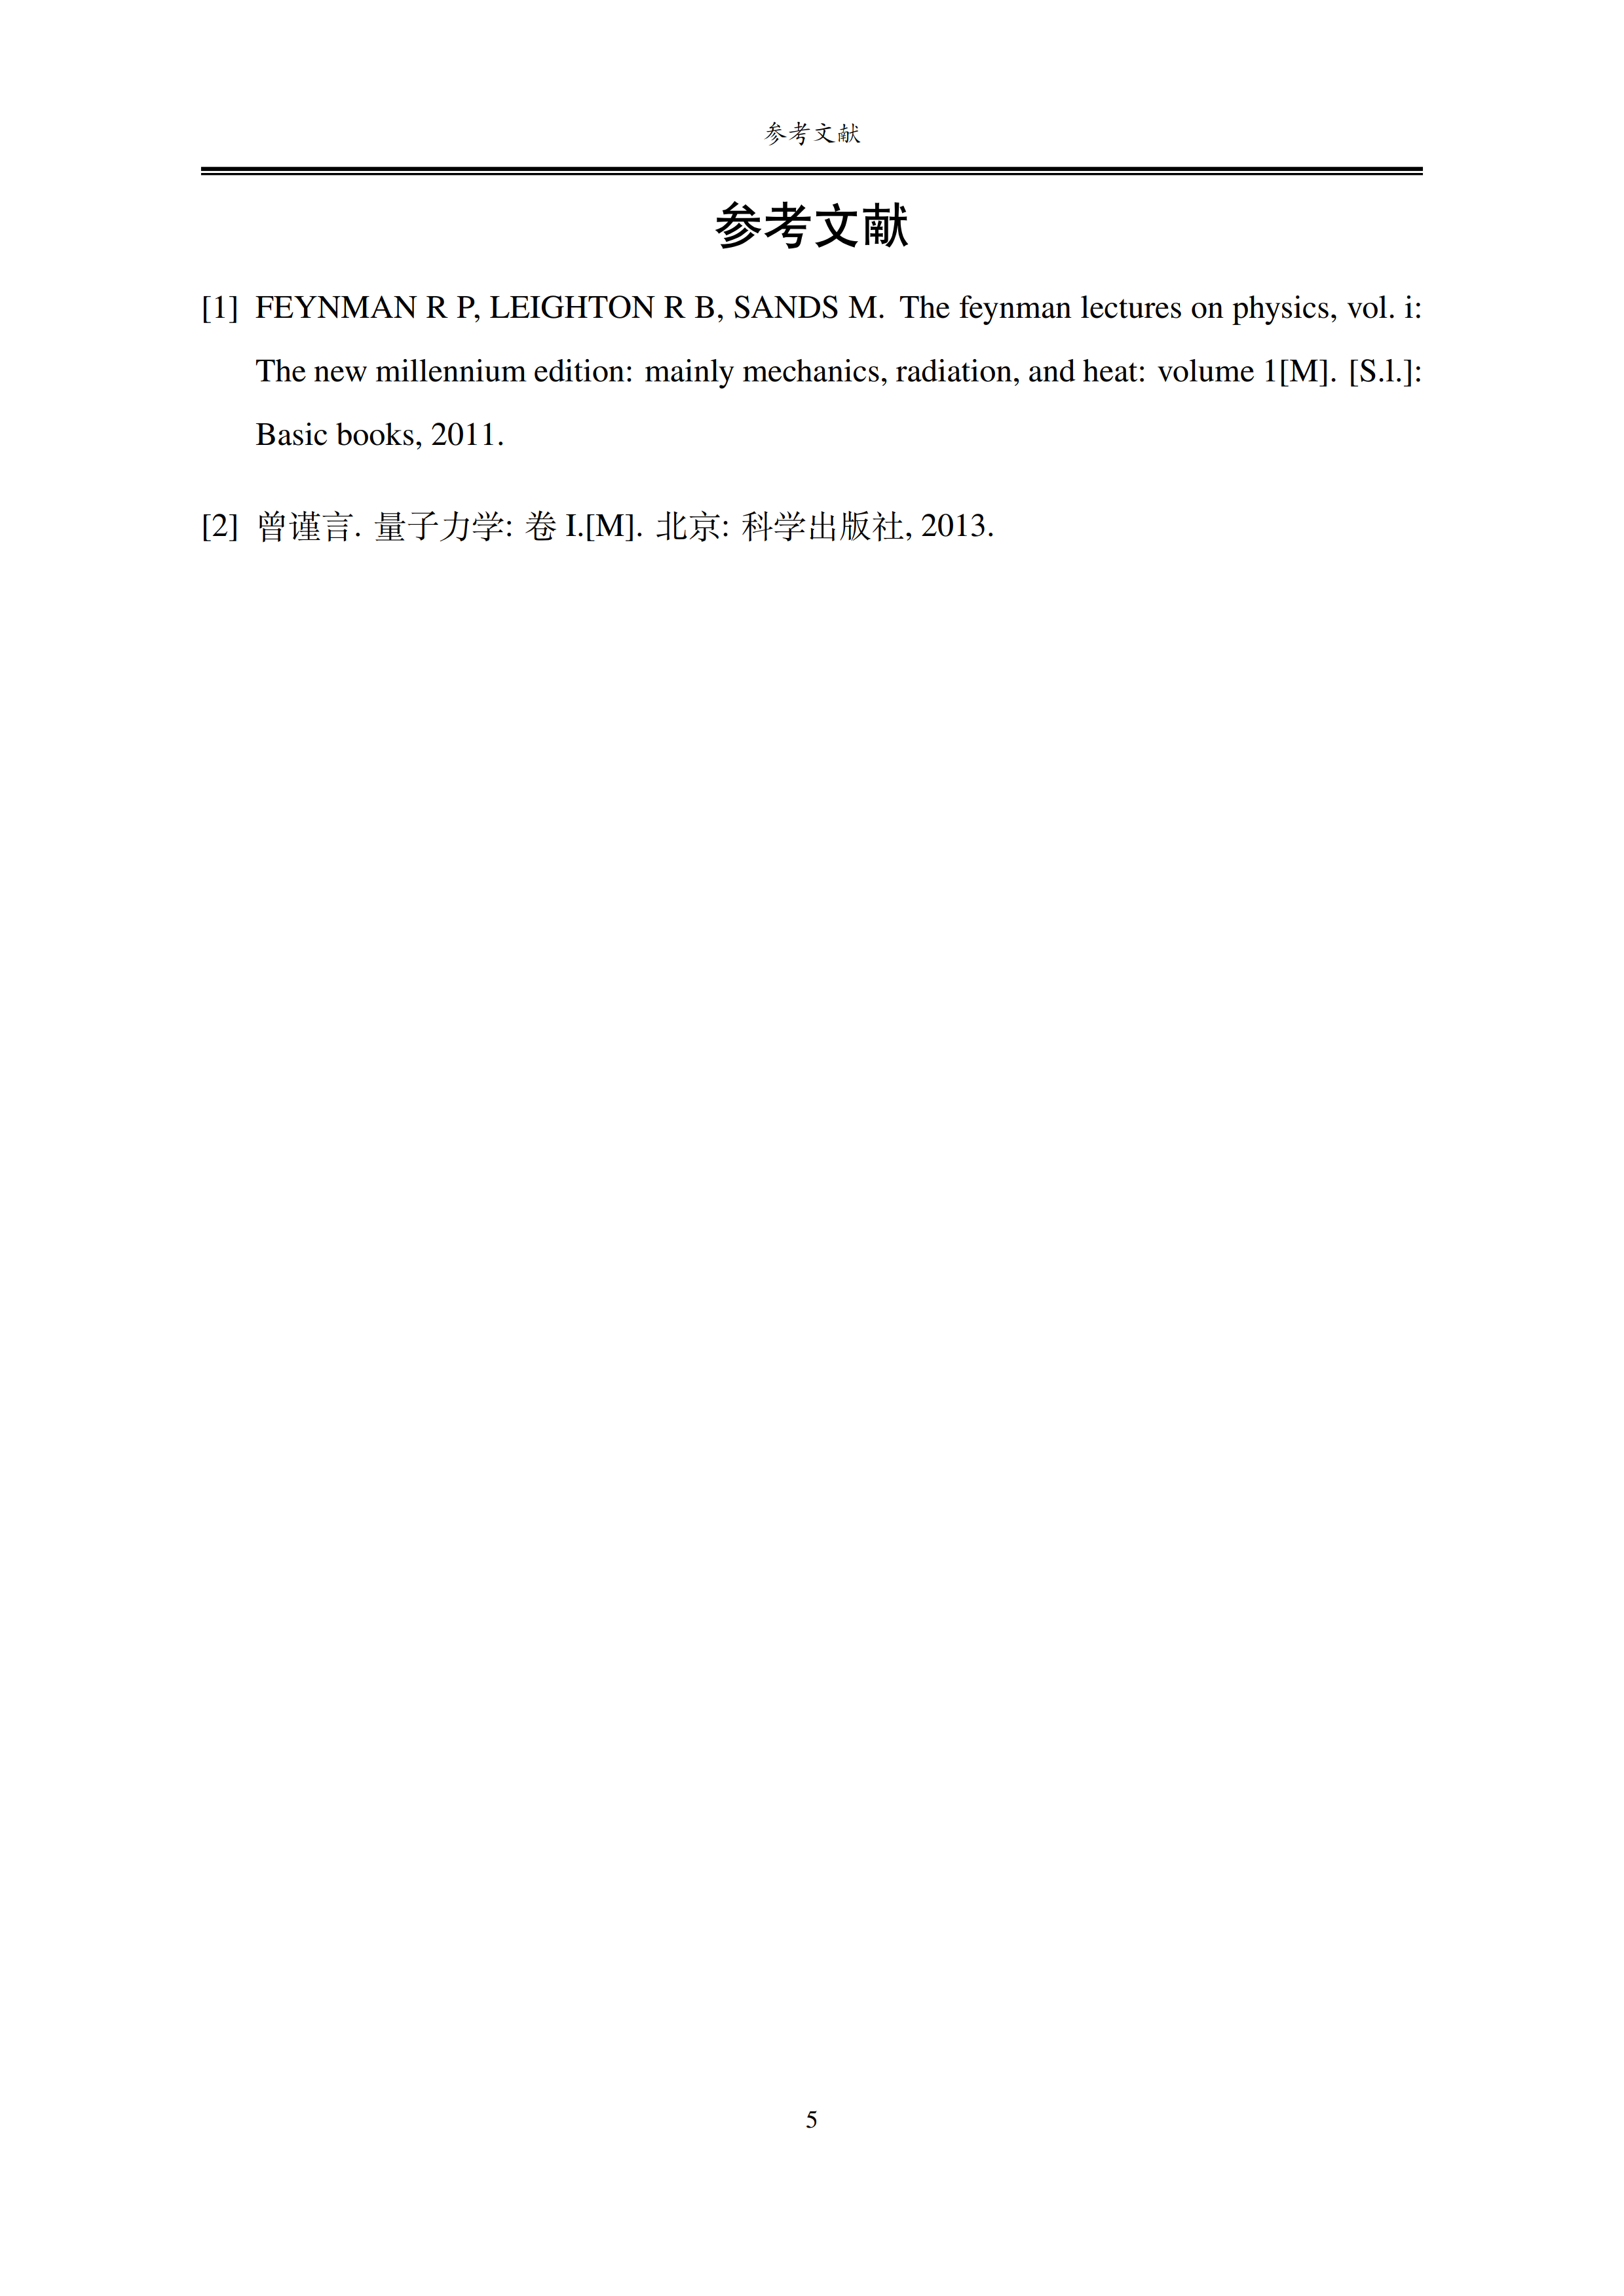 广东工业大学硕博学位论文 LaTeX 模板（预测试版）